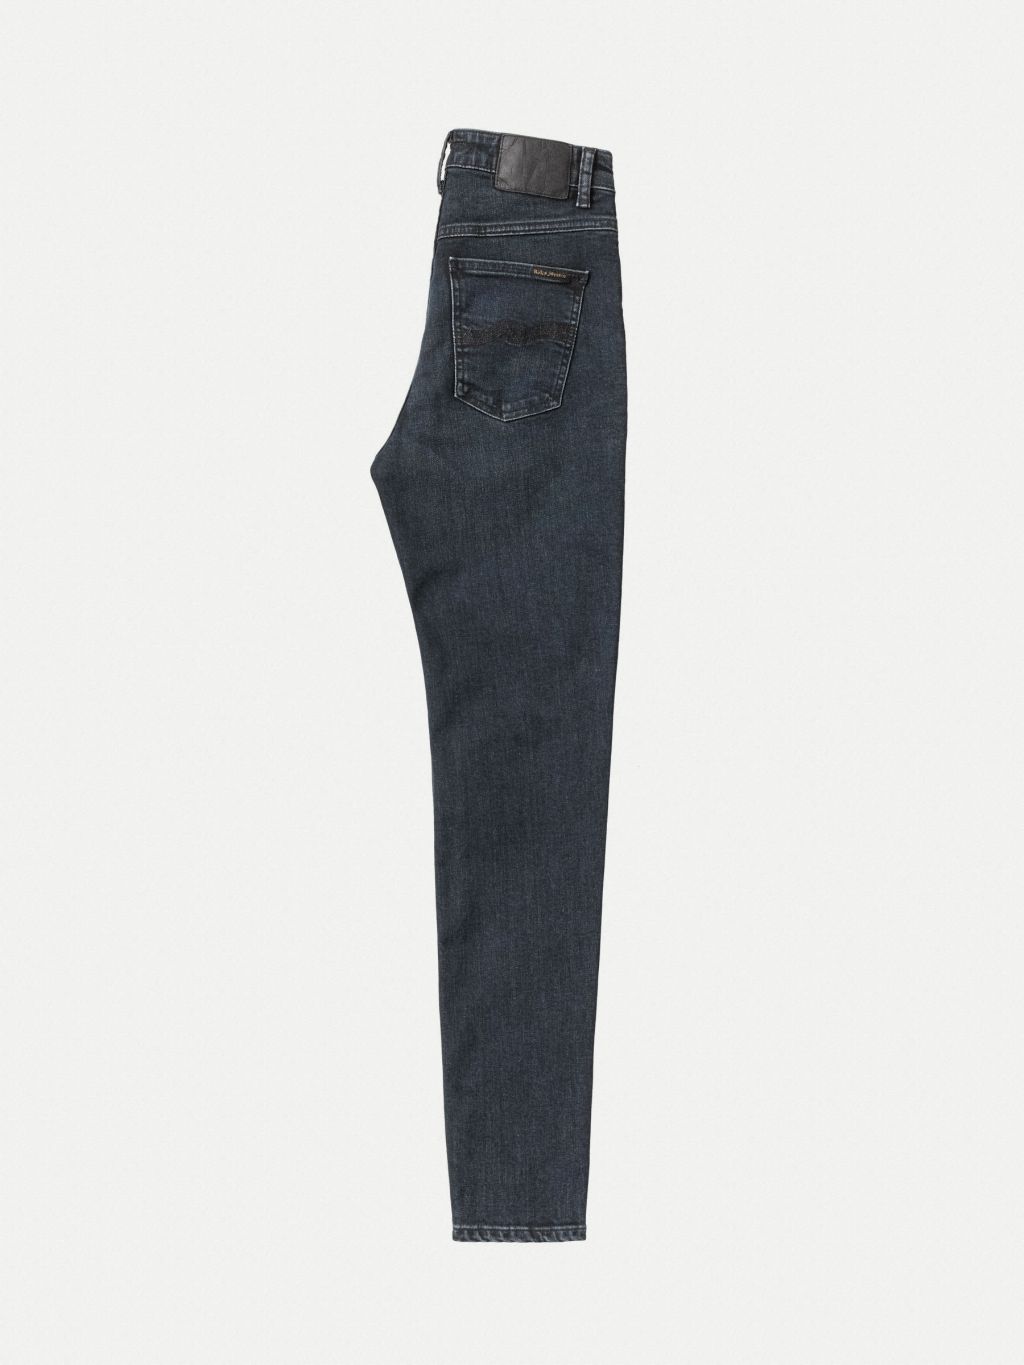 Hightop Tilde High Waist Jeans - Blue Quartz 27/28